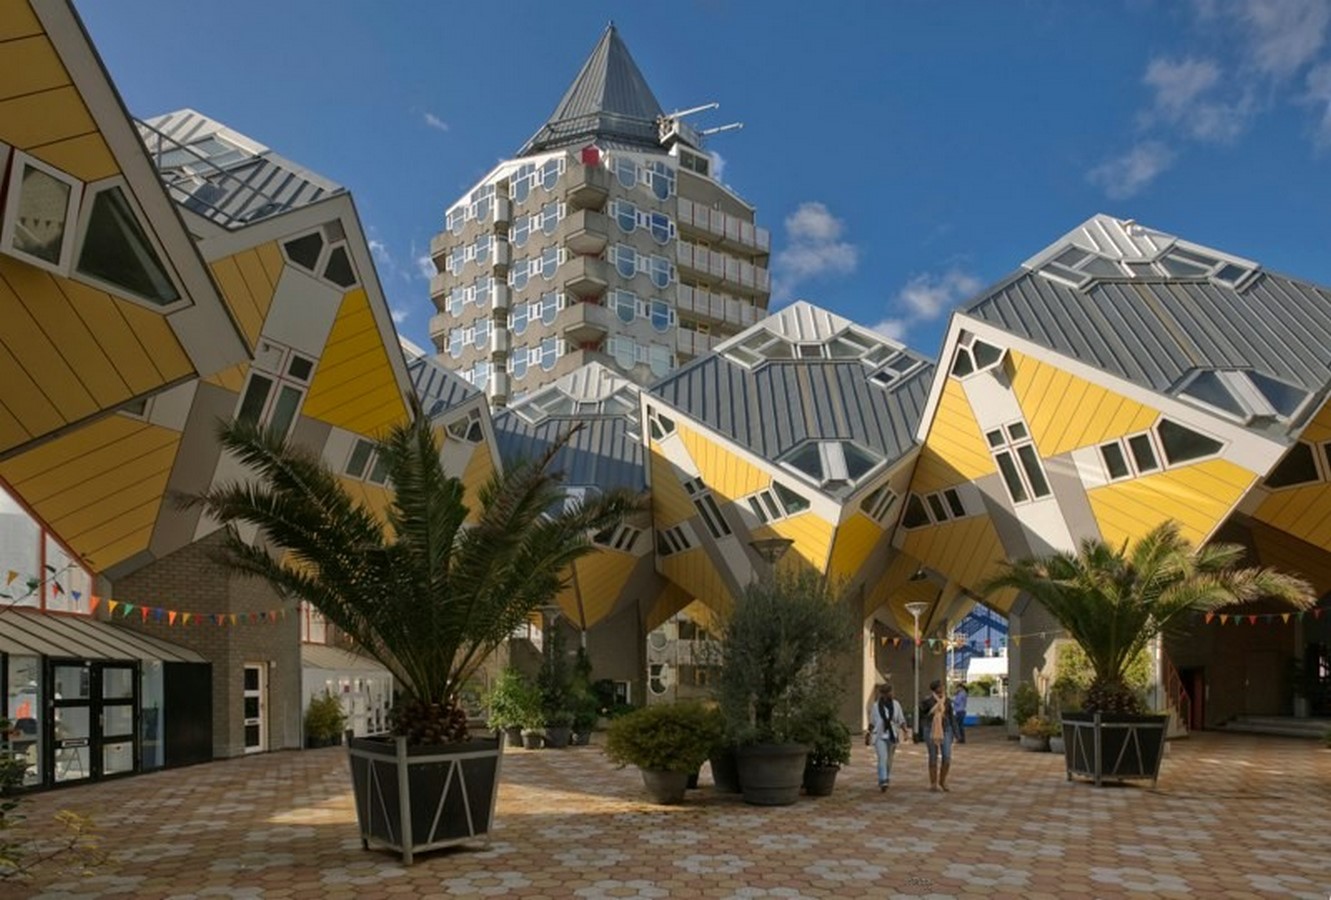 Kubuswoningen by Piet Blom: Living as an Urban Roof - Sheet1